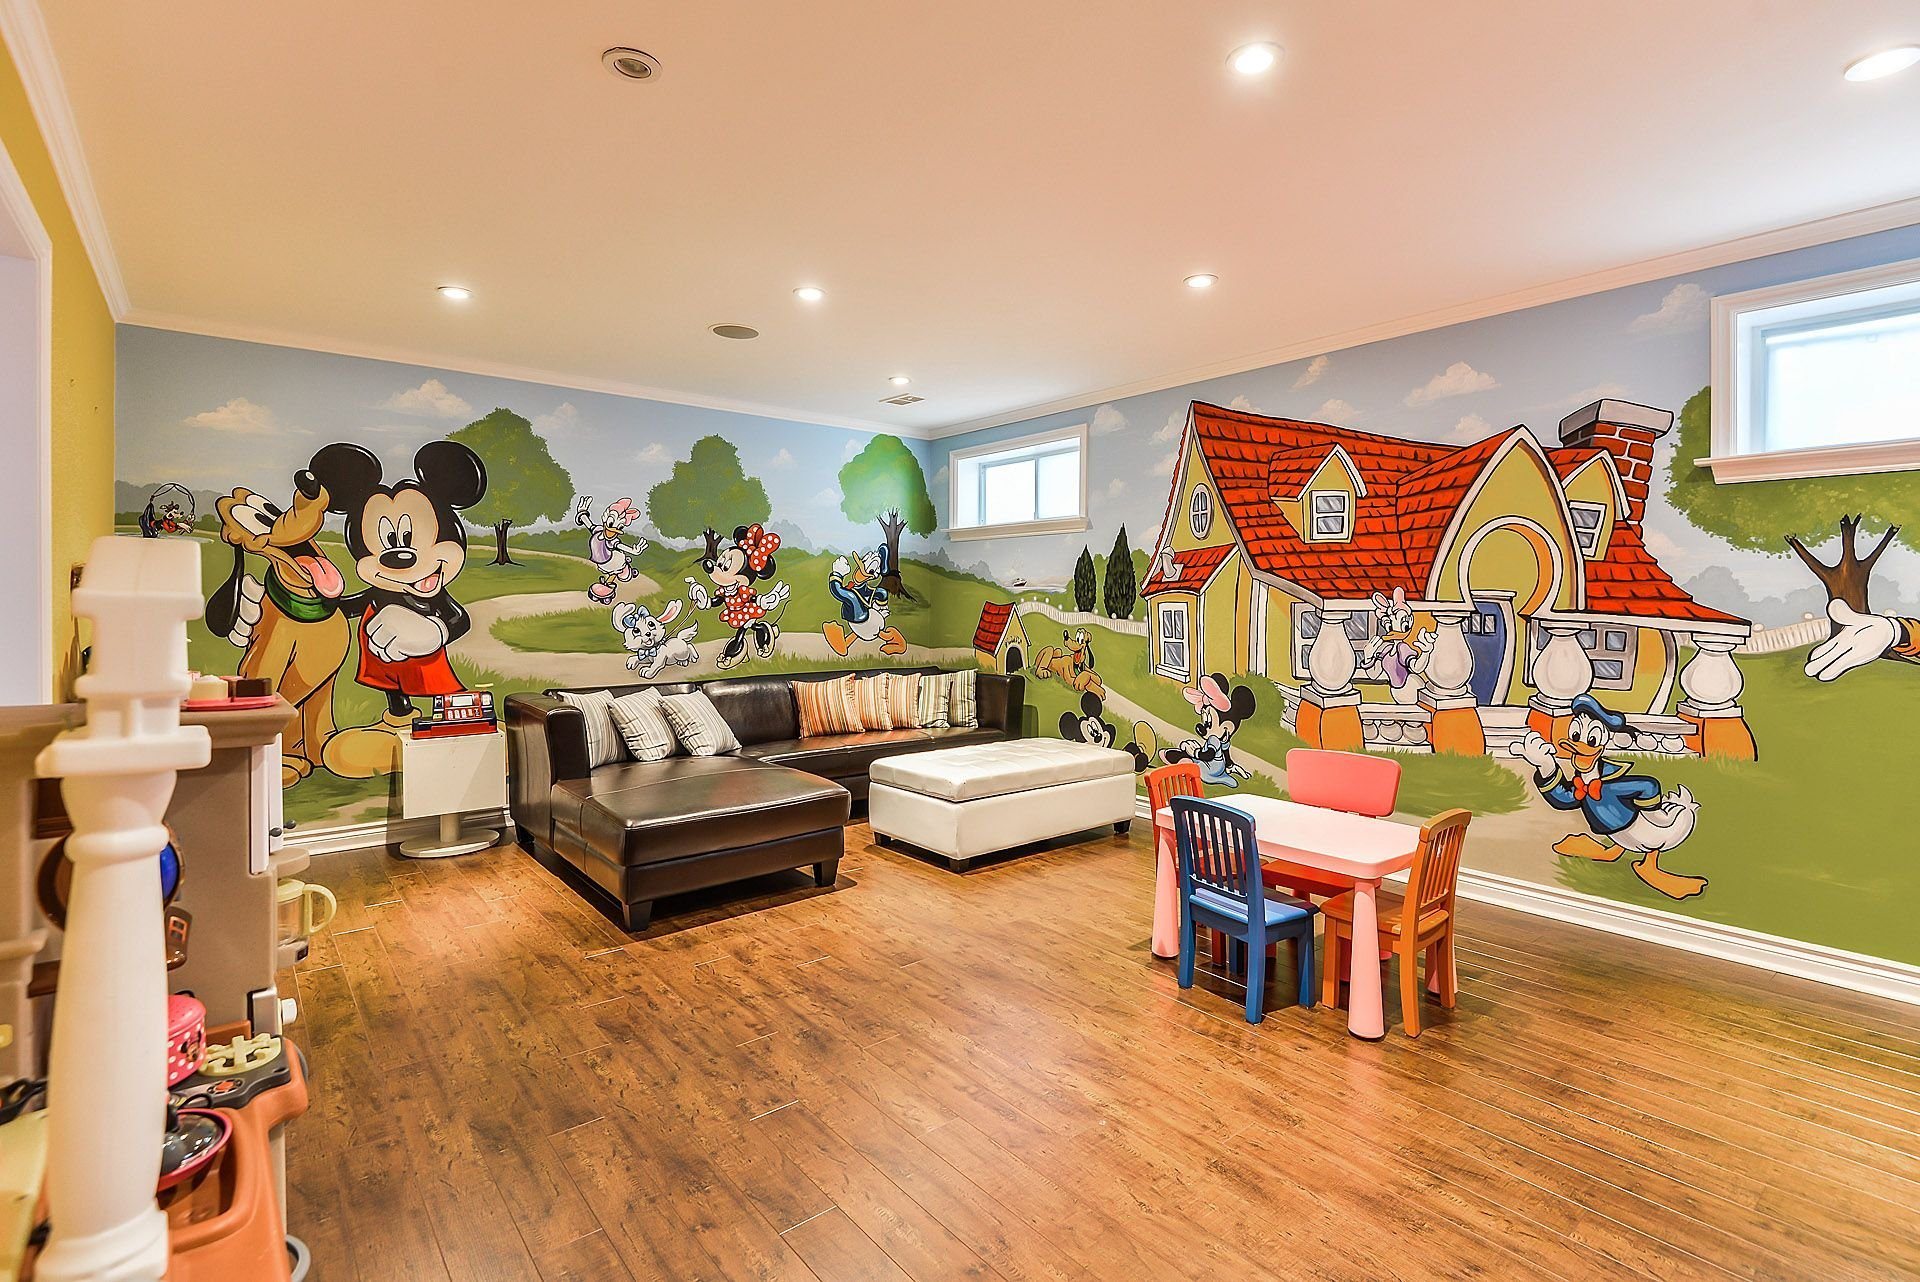 Игровая комната для малышей. Интерьер игровой комнаты. Интерьер игровой комнаты для детей. Стены в детской комнате дизайн.